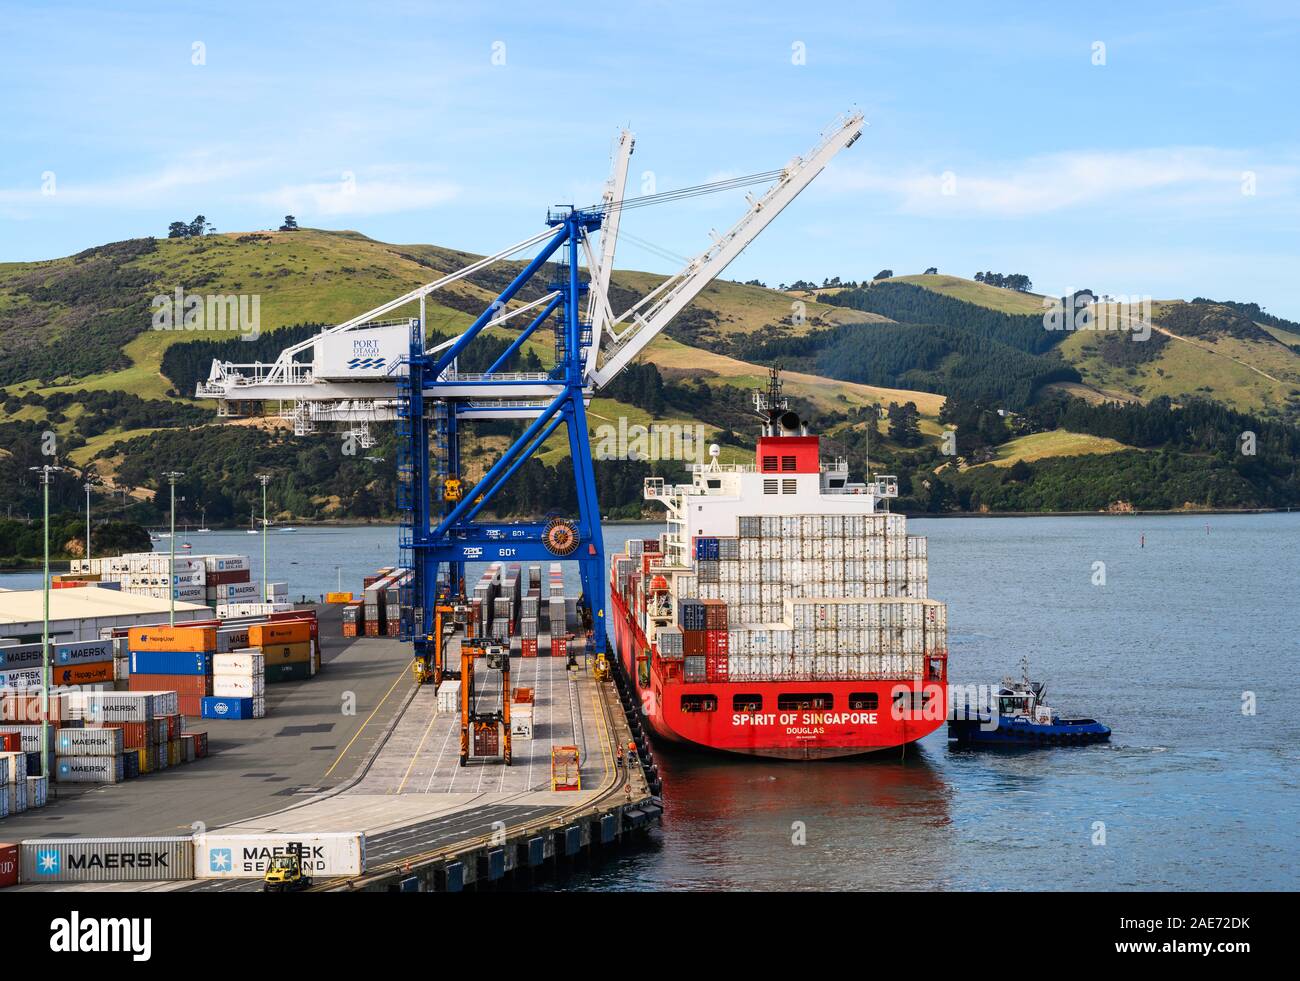 Porte-conteneurs, Esprit de Singapour, accosté au port à conteneurs Port Chalmers, en Nouvelle-Zélande. Banque D'Images